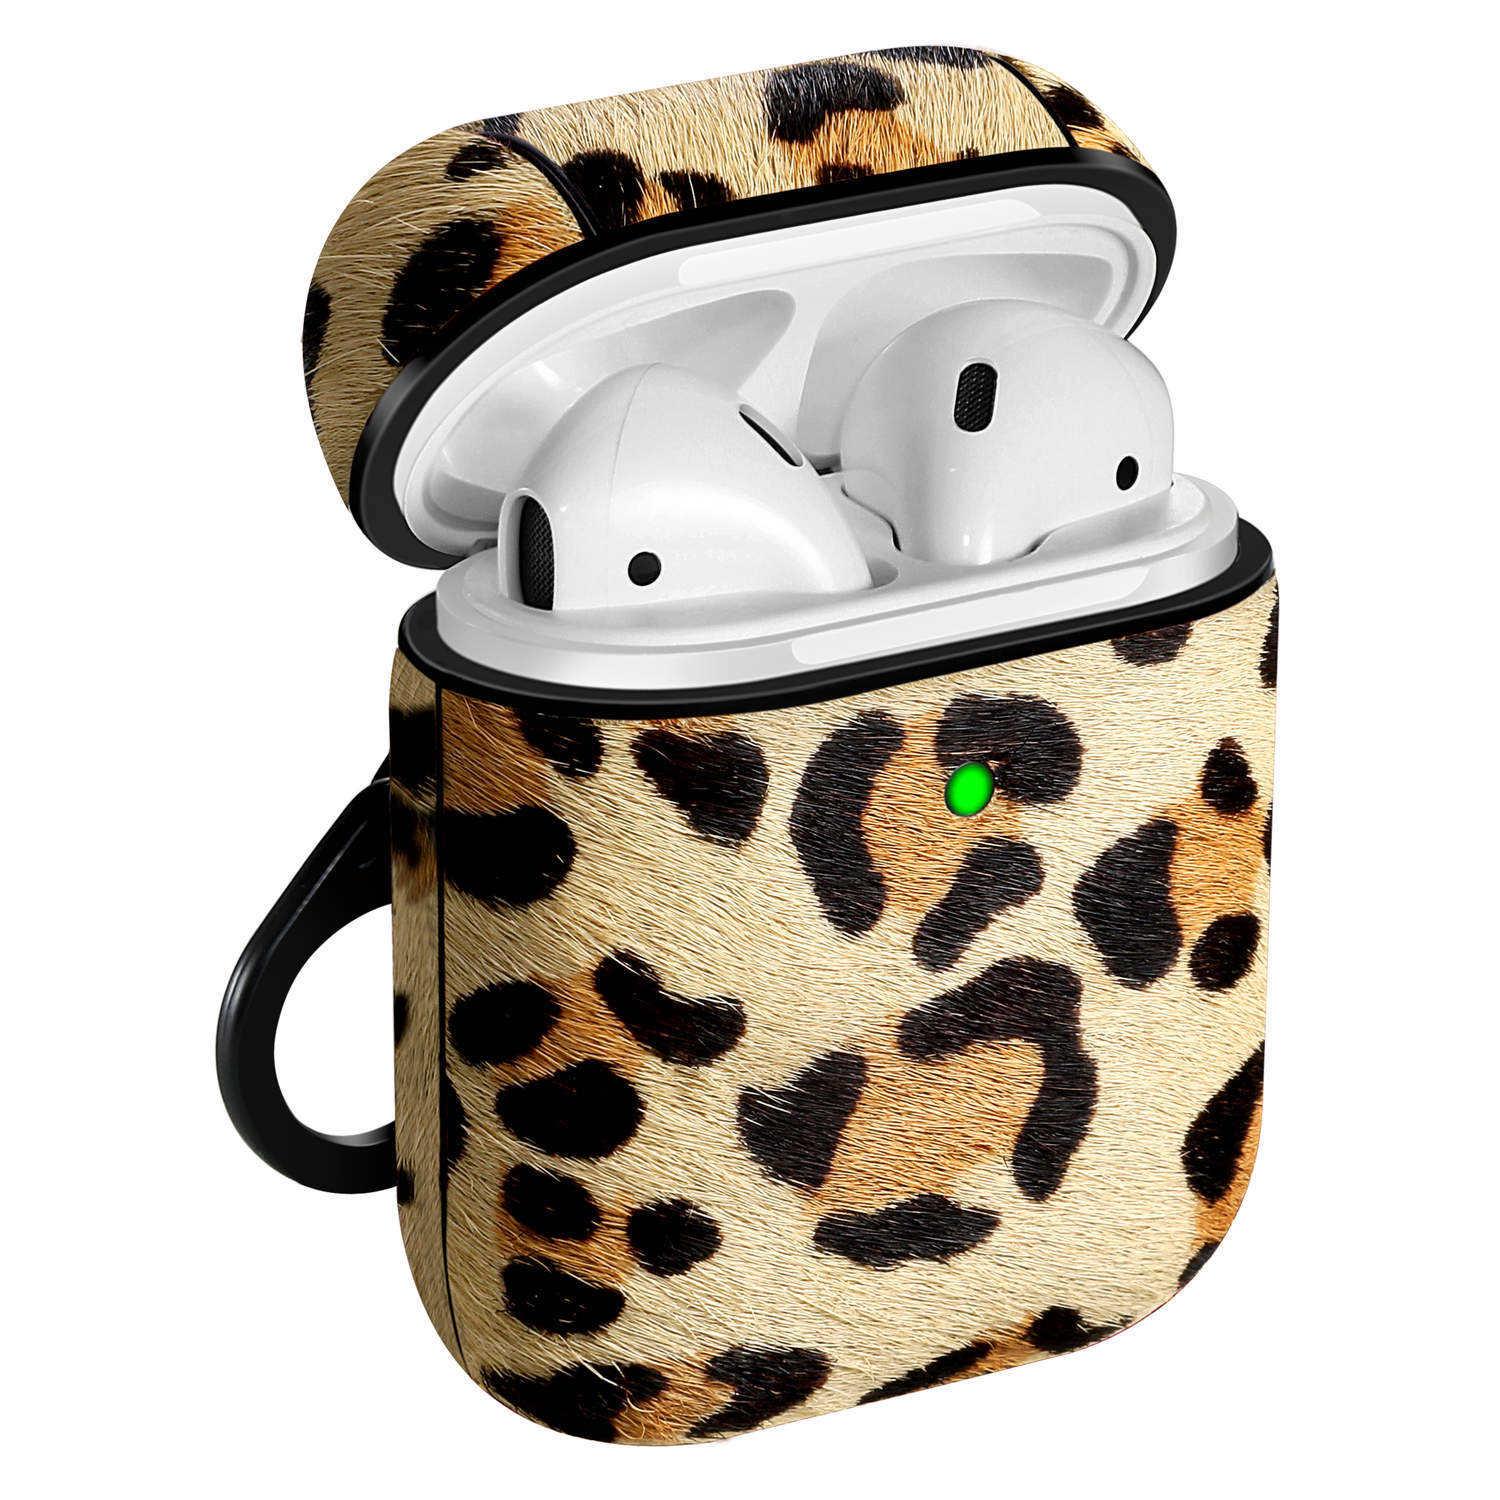 Airpods taske - stødsikker beskyttelse - leopardmønster | Elgiganten